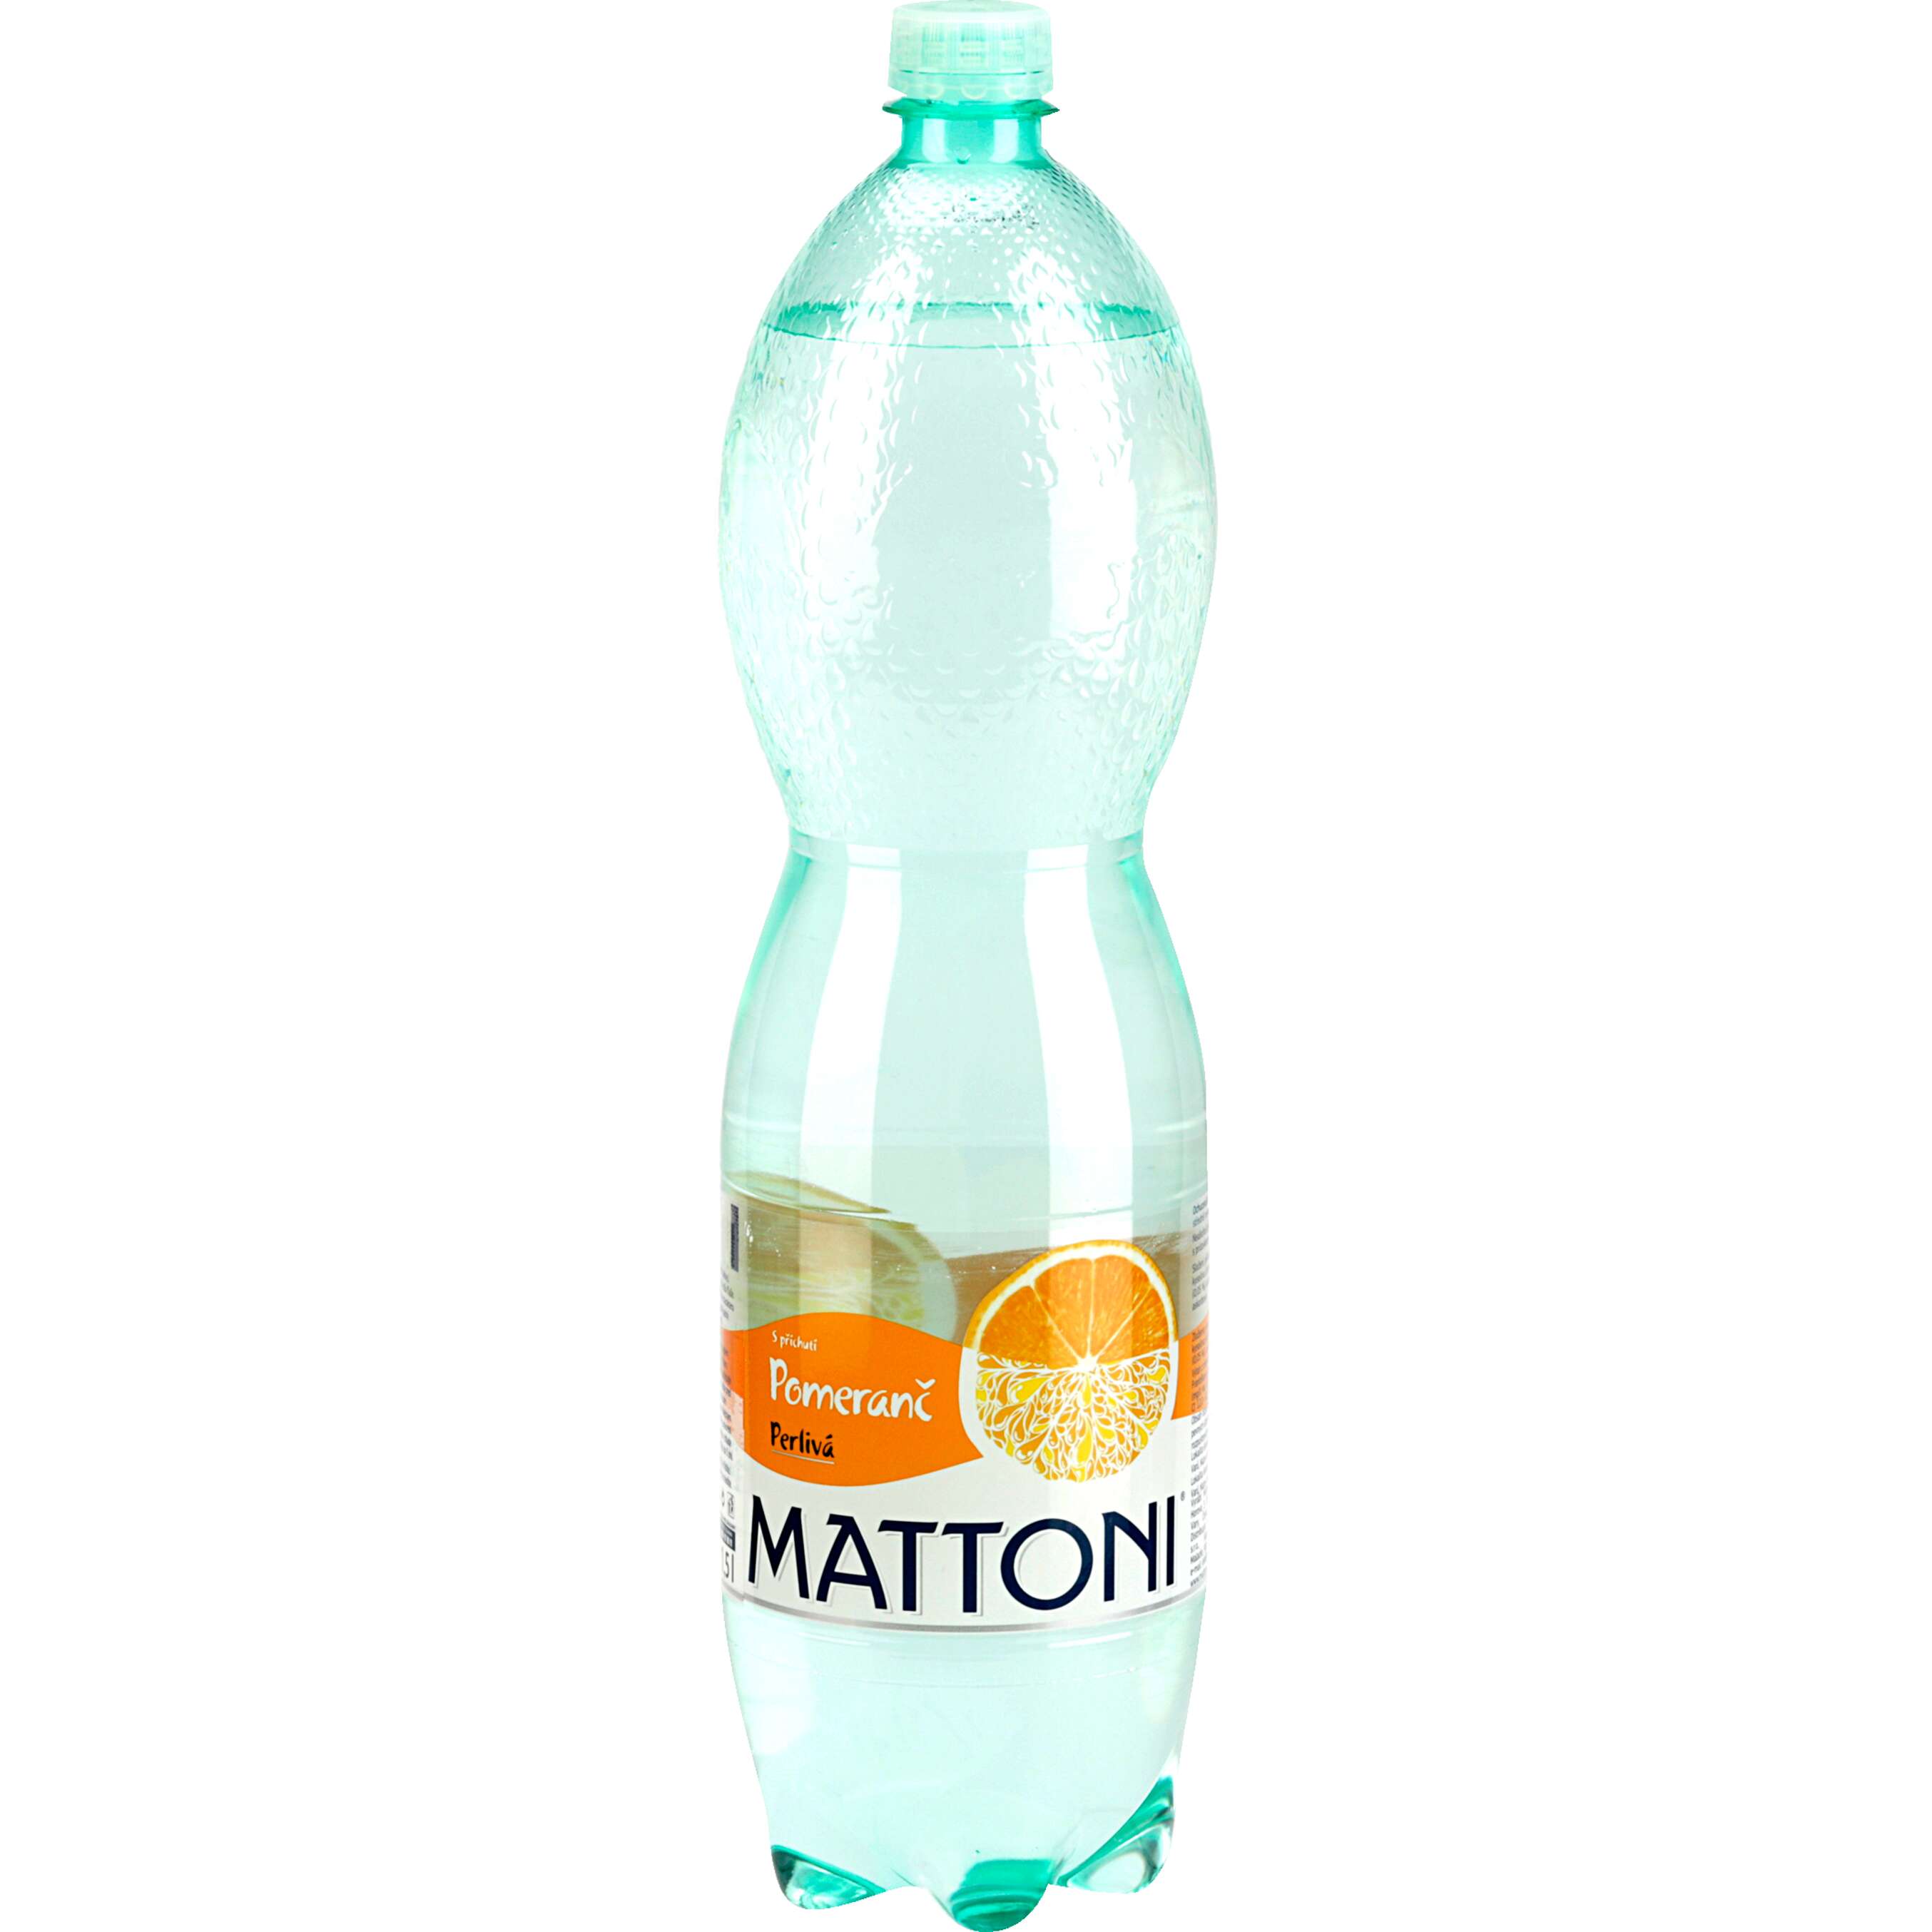 Zobrazit nabídku Mattoni Minerální voda ochucená různé druhy